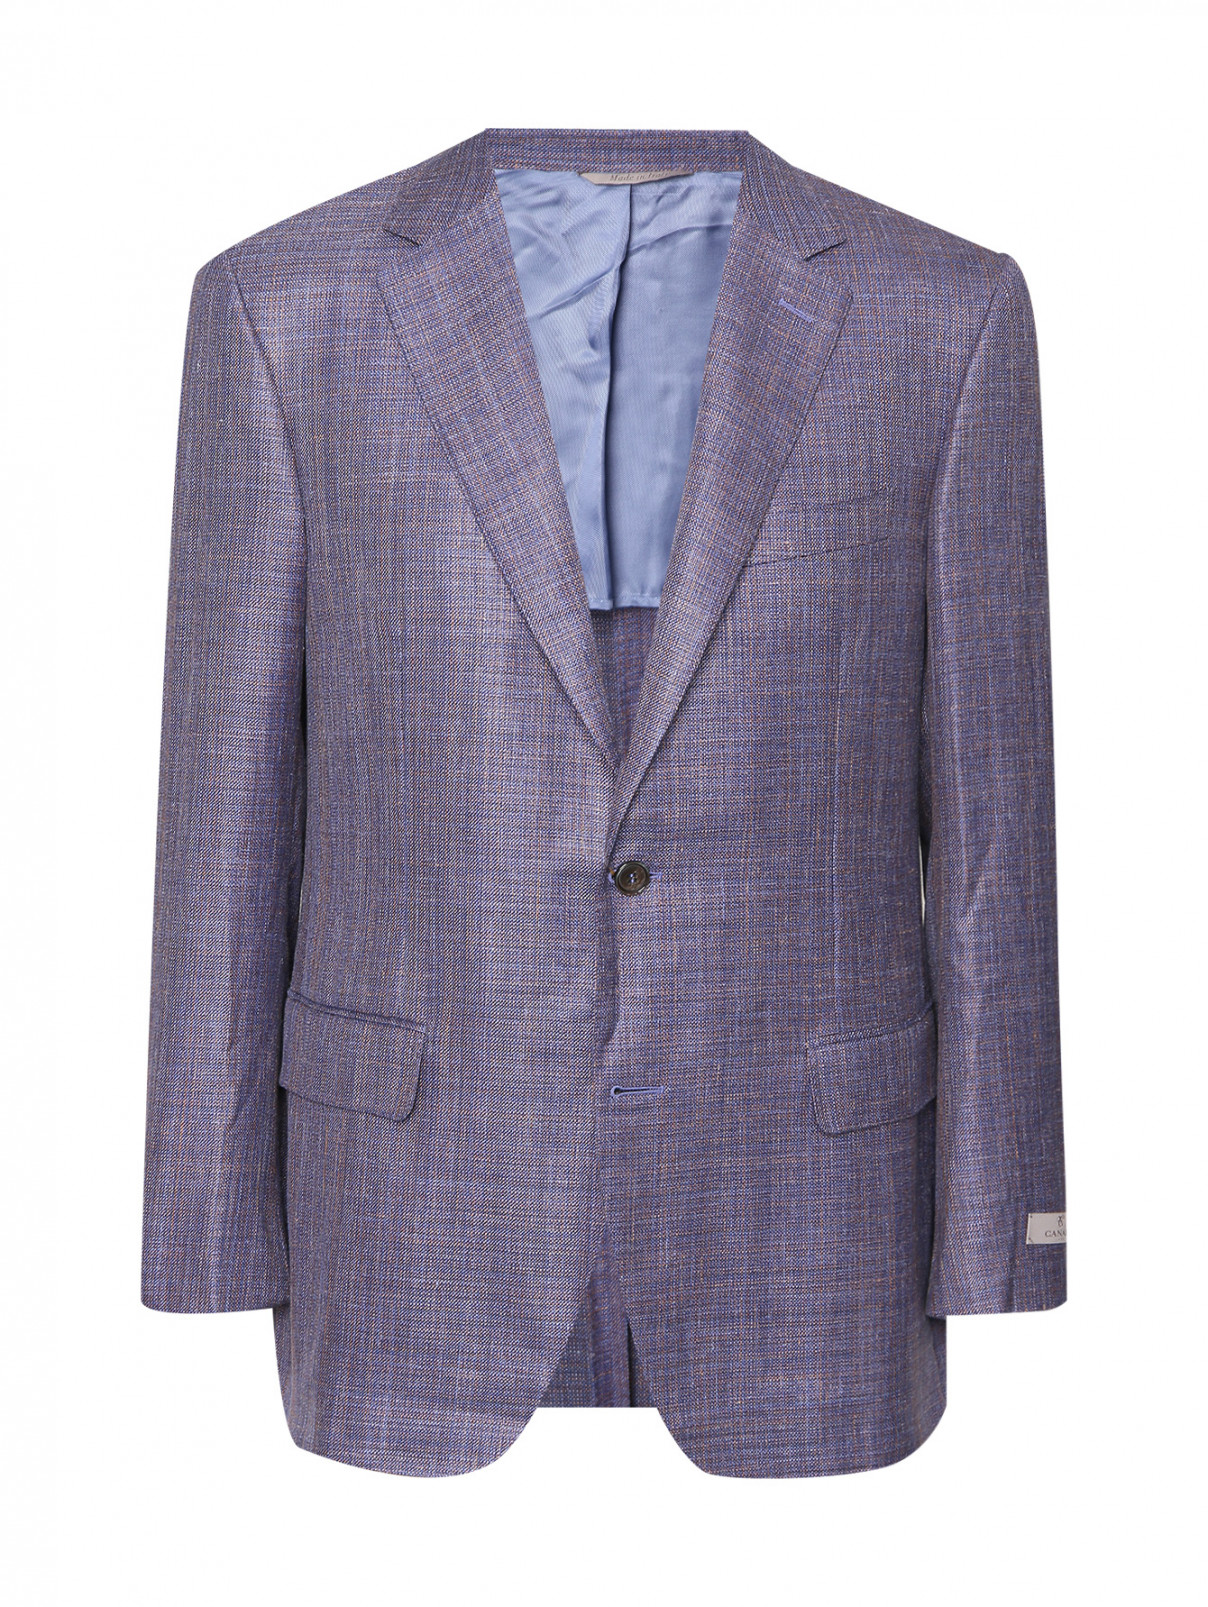 Пиджак из шерсти и шелка с узором Canali  –  Общий вид  – Цвет:  Синий